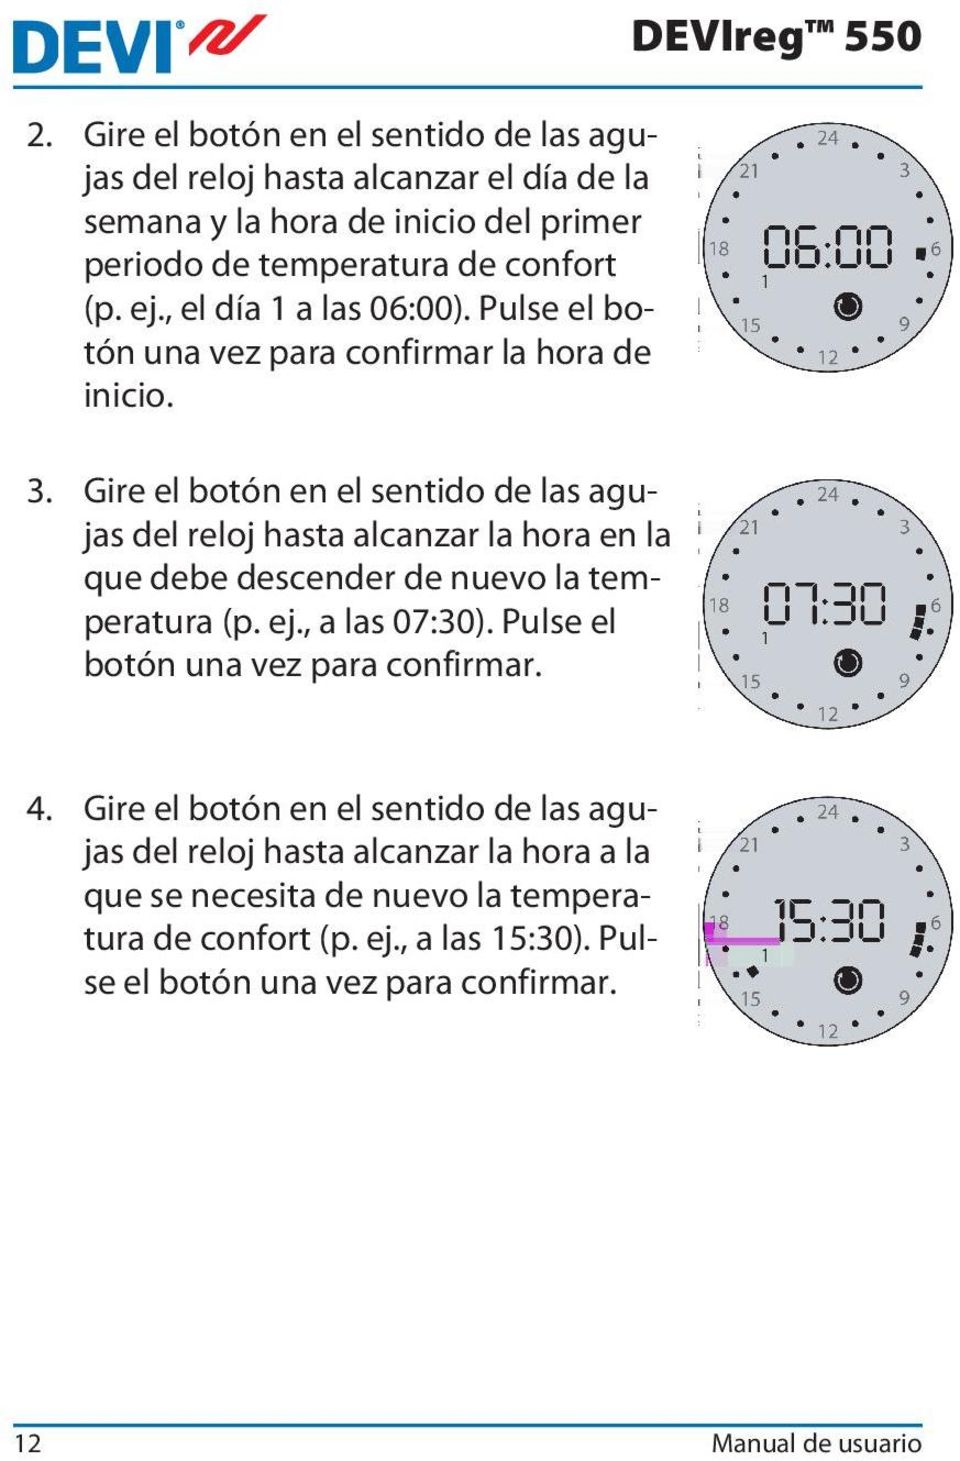 Gire el botón en el sentido de las agujas del reloj hasta alcanzar la hora en la que debe descender de nuevo la temperatura (p. ej., a las 07:30).